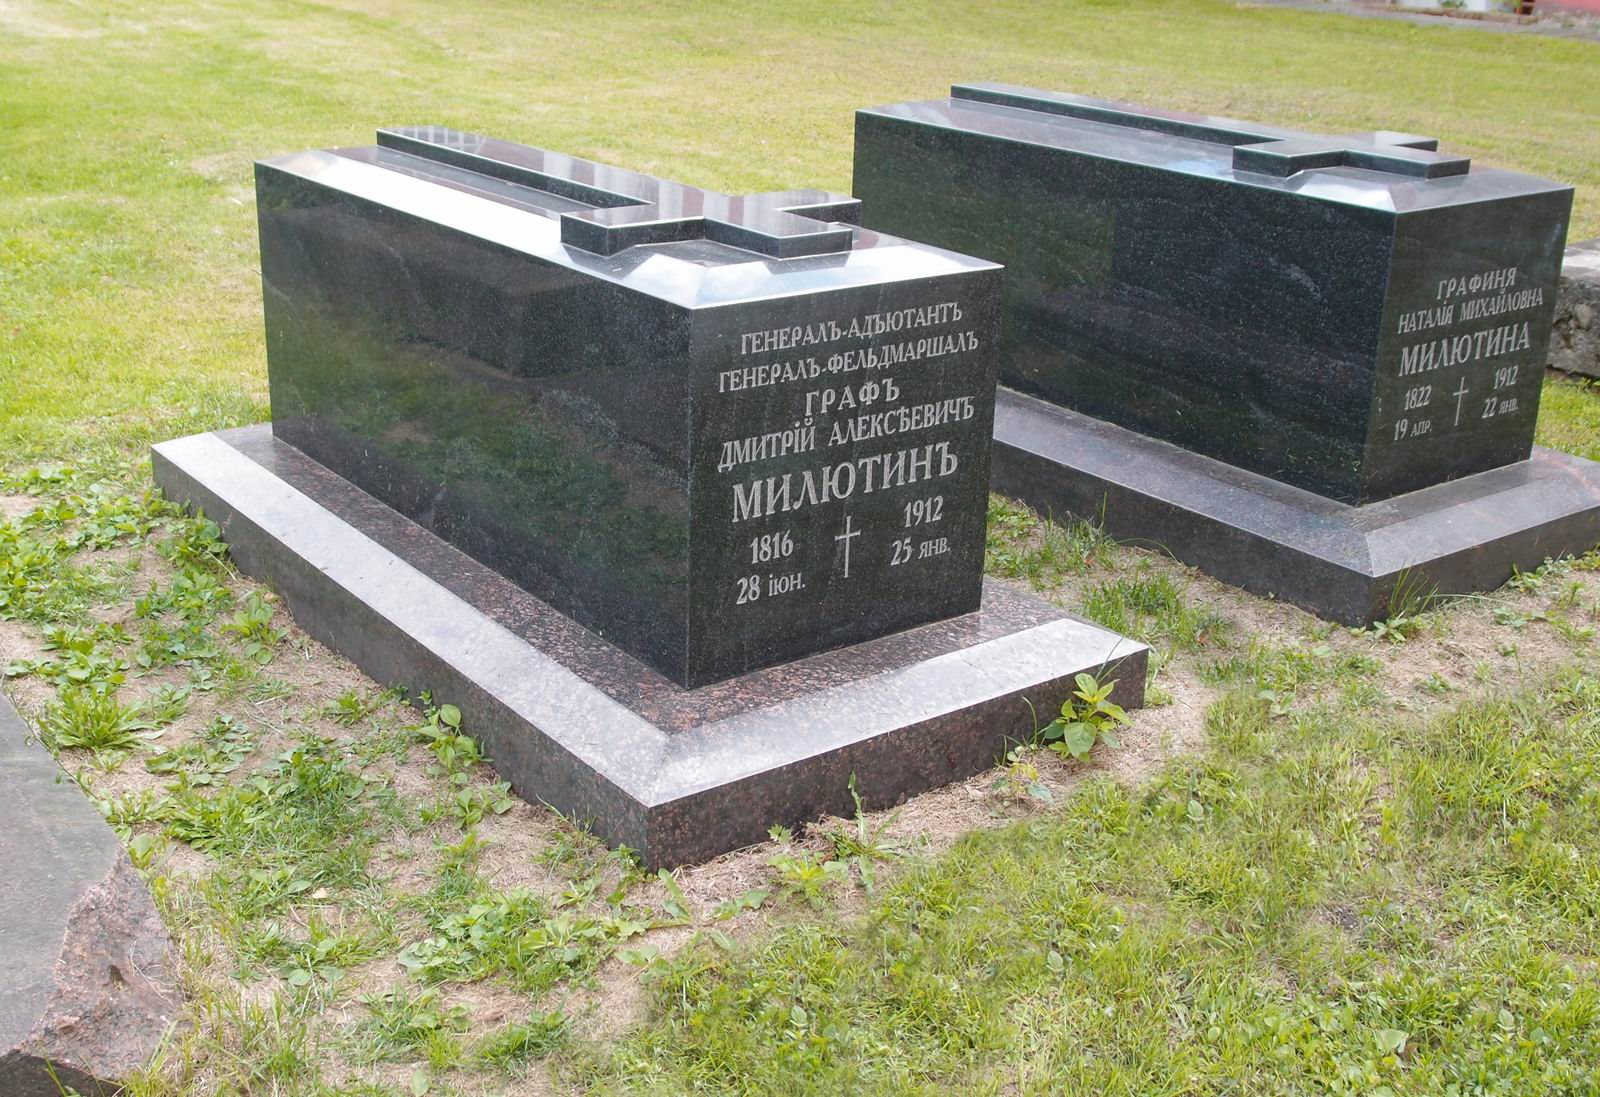 Памятник на могиле Милютина Д.А. (1816-1912), в Новодевичьем монастыре. Нажмите левую кнопку мыши чтобы увидеть другой вариант.